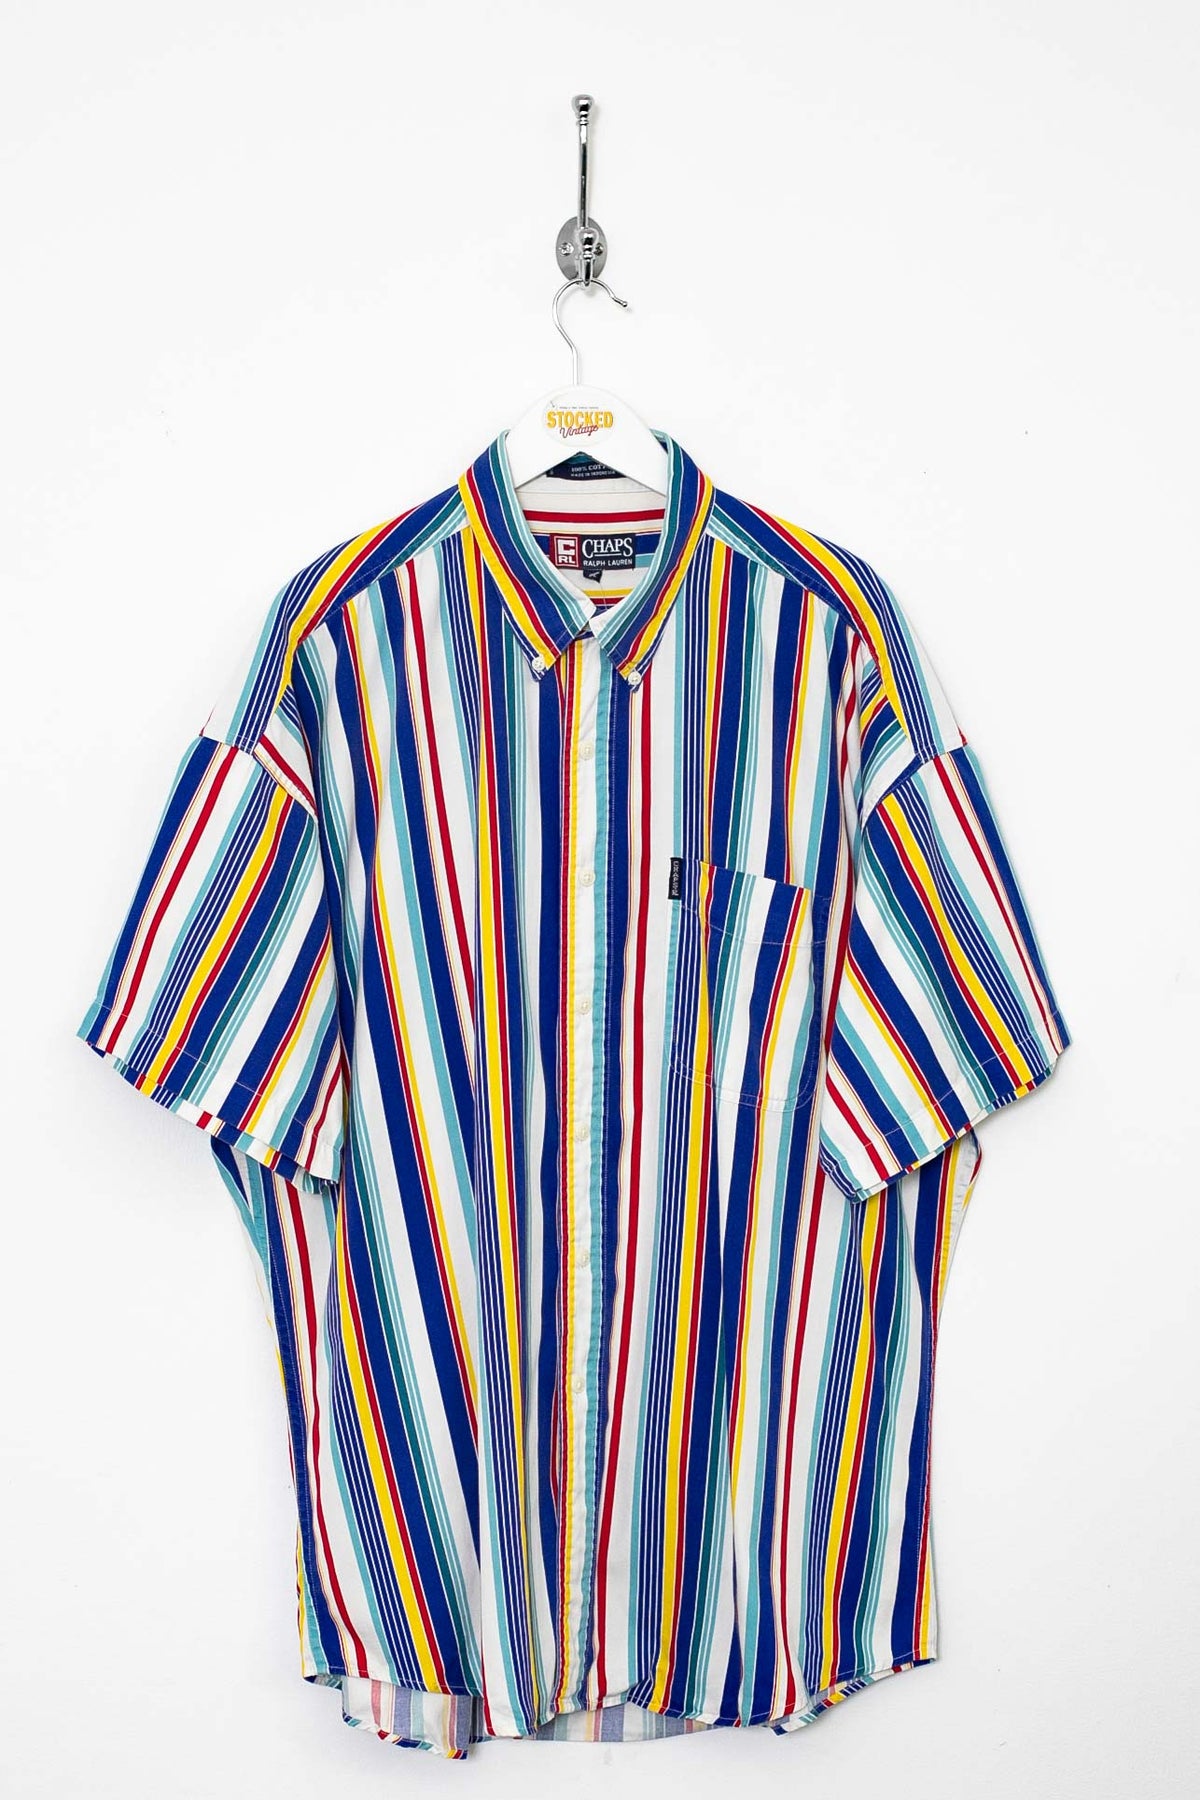 90s Ralph Lauren Chaps Shirt (XL)